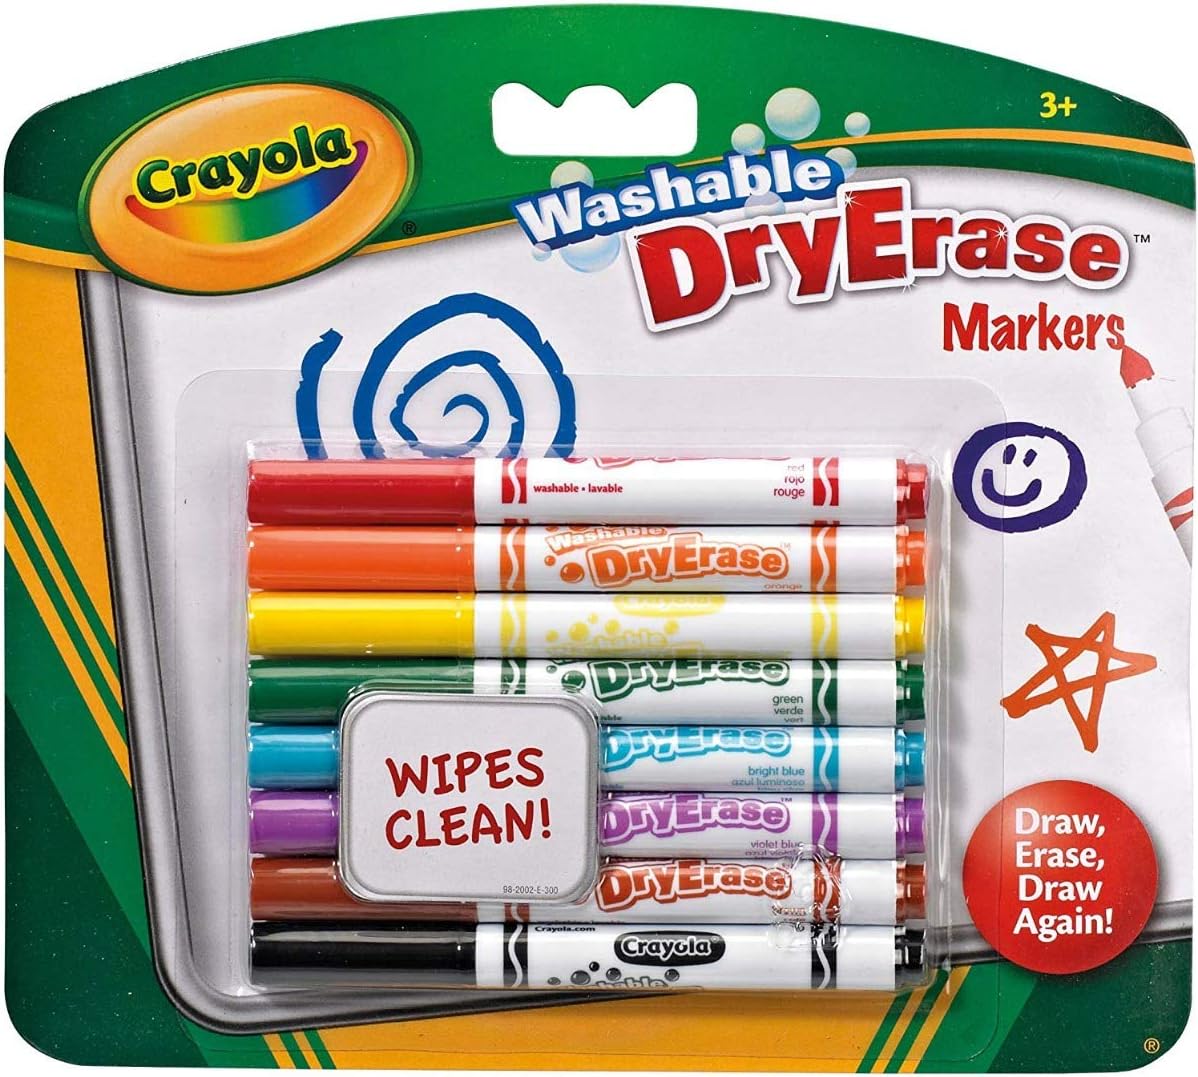 Crayola Washable Dry Erase Markers, 8's